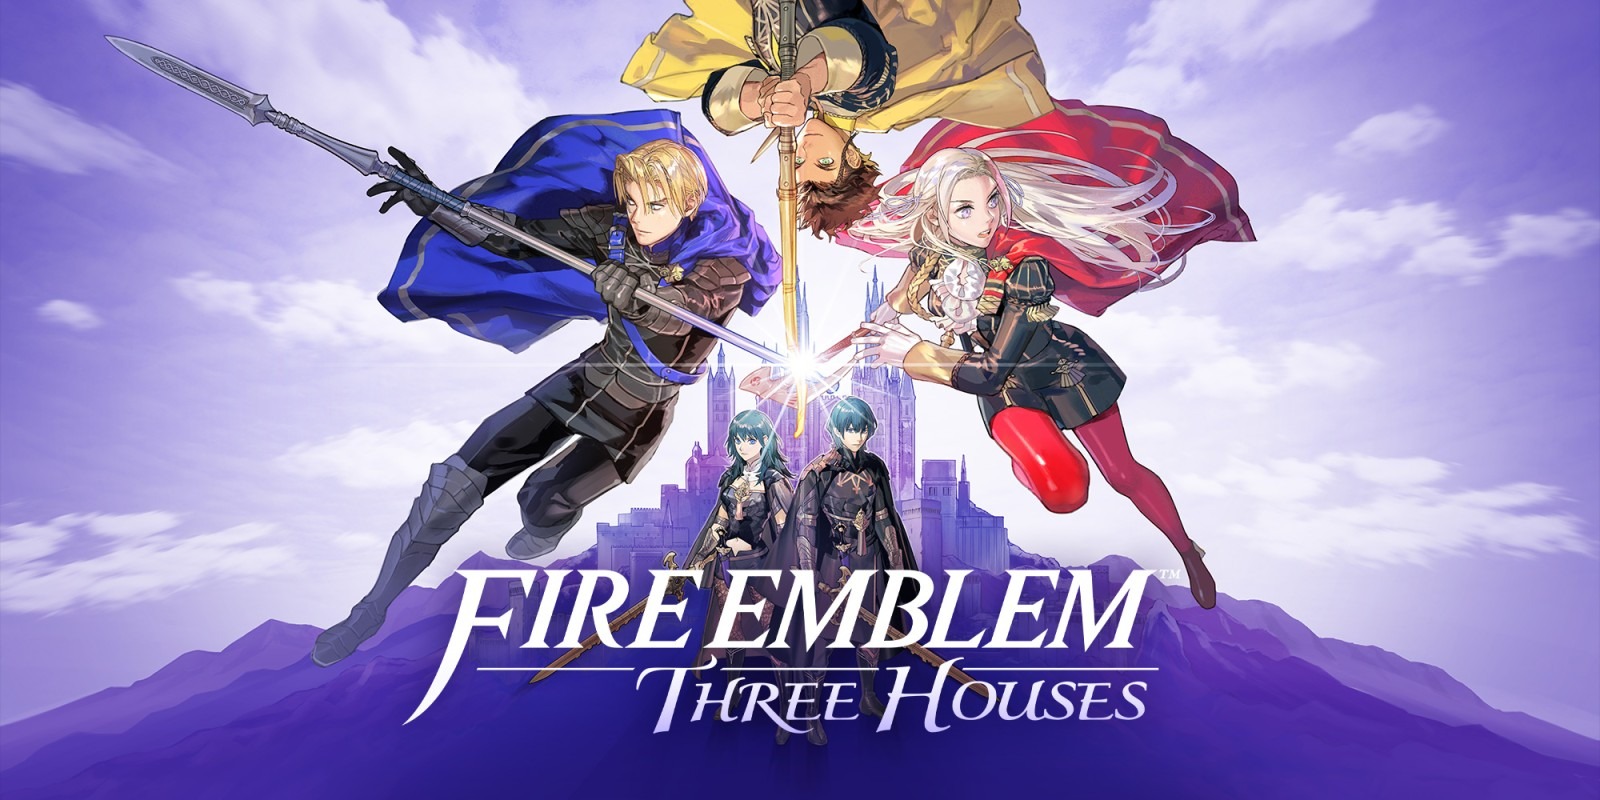 Novos detalhes da DLC de Fire Emblem: Three Houses!